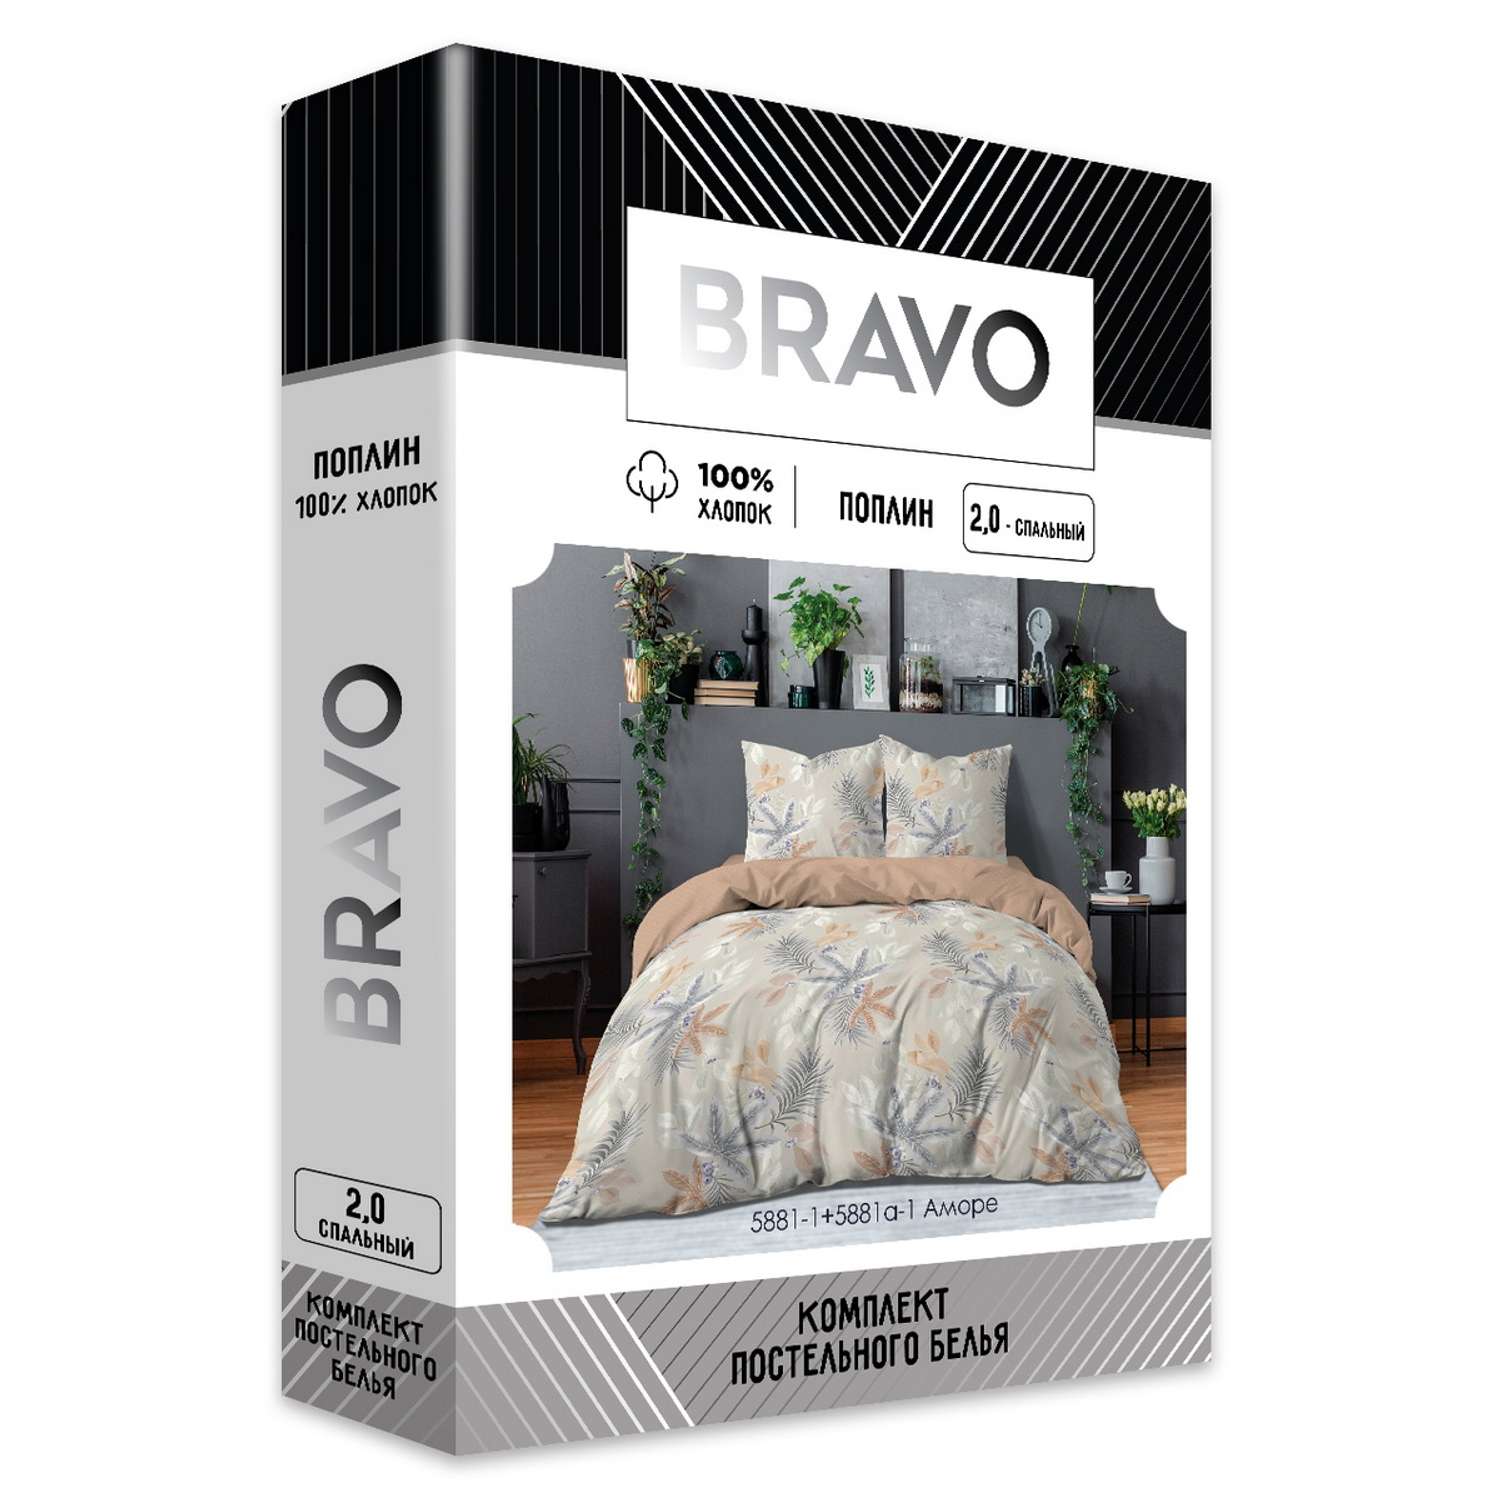 Комплект постельного белья Bravo Аморе 2 спальный наволочки 70х70 м 205 рис 5881-1+5881а-1 - фото 9